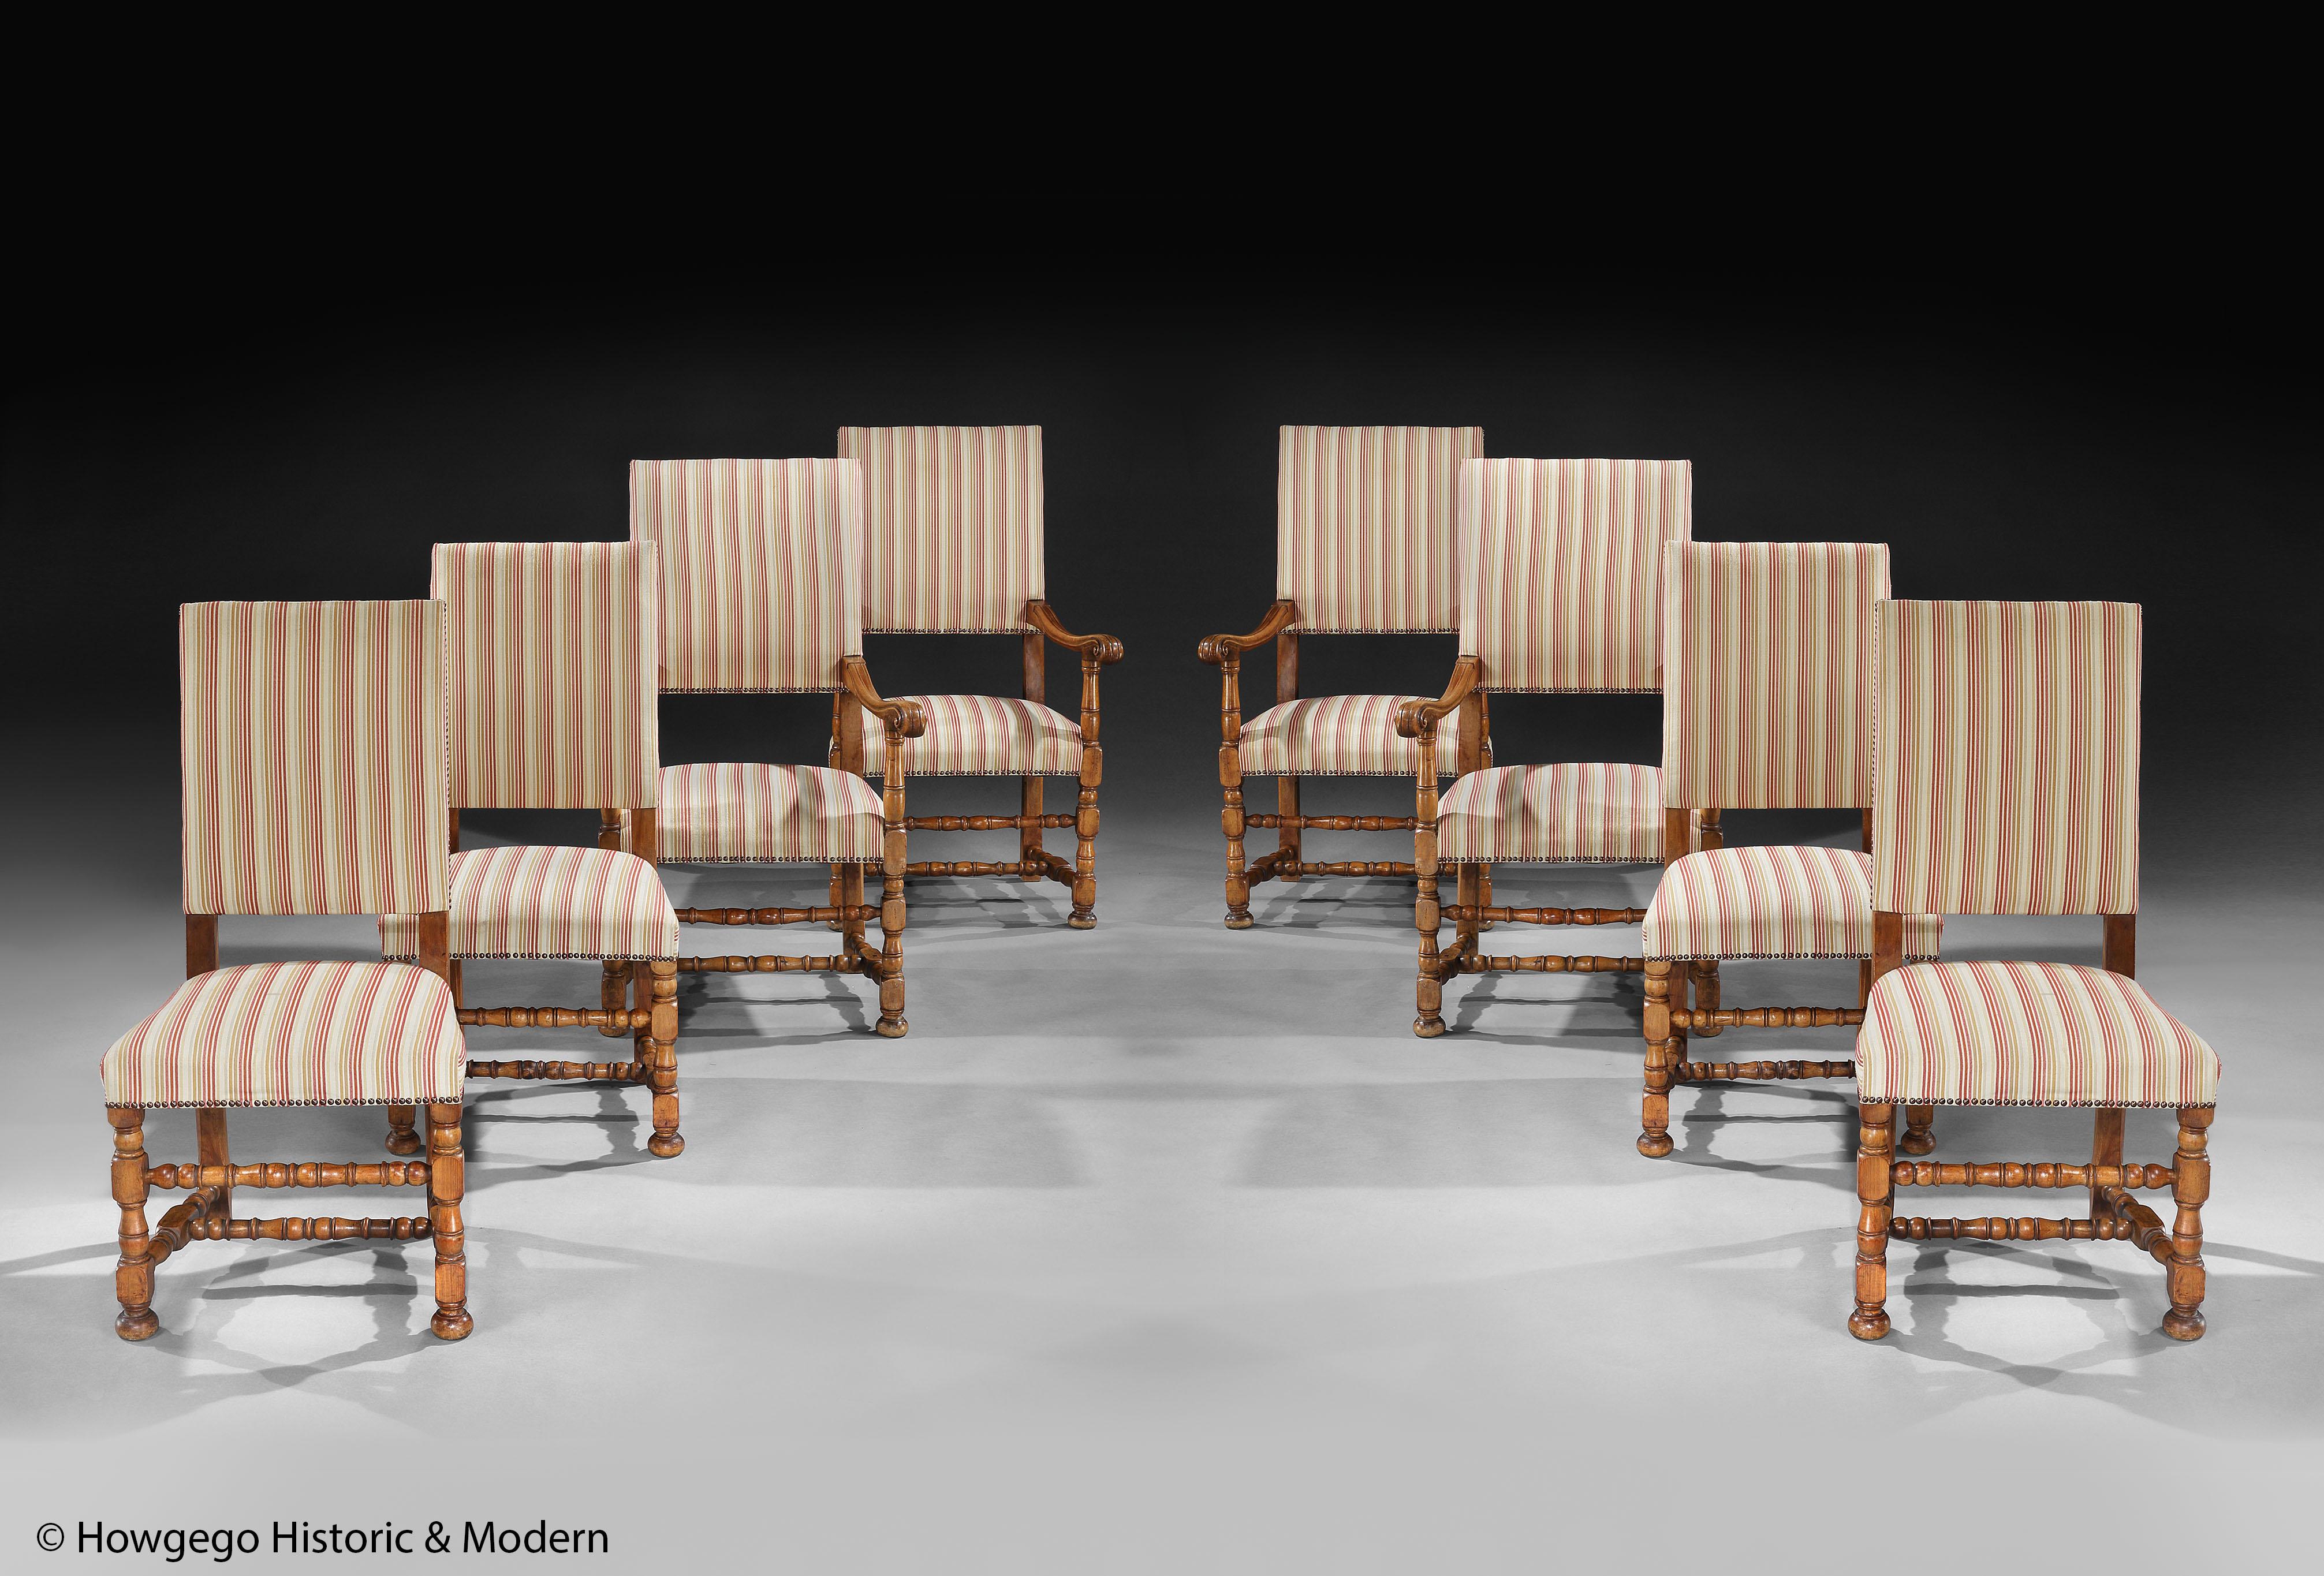 Un bel ensemble de huit chaises en bois fruitier, fin du 19ème siècle, de style Louis XIV.

Bel ensemble avec une forme et des tournages remarquables.
Très rare d'avoir quatre fauteuils dans un ensemble.
Il est également inhabituel d'être fabriqué à